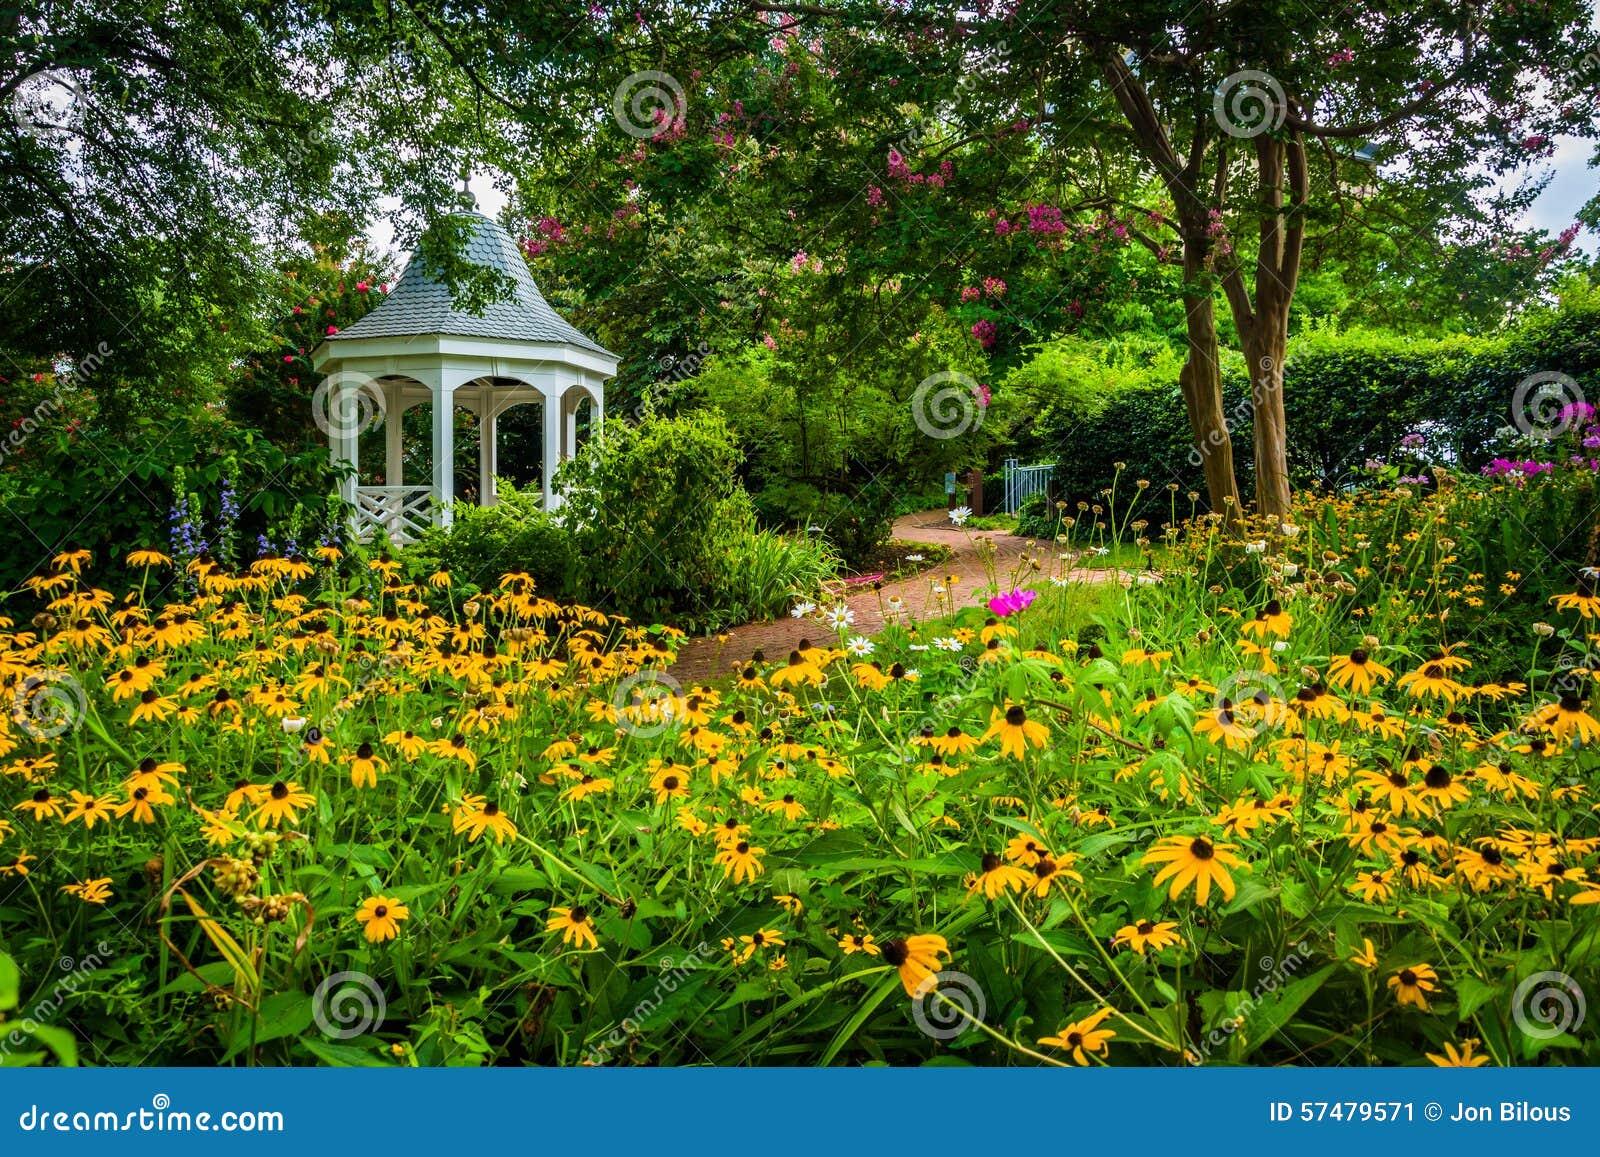 colorful garden and gazebo in a park in alexandria, virginia.